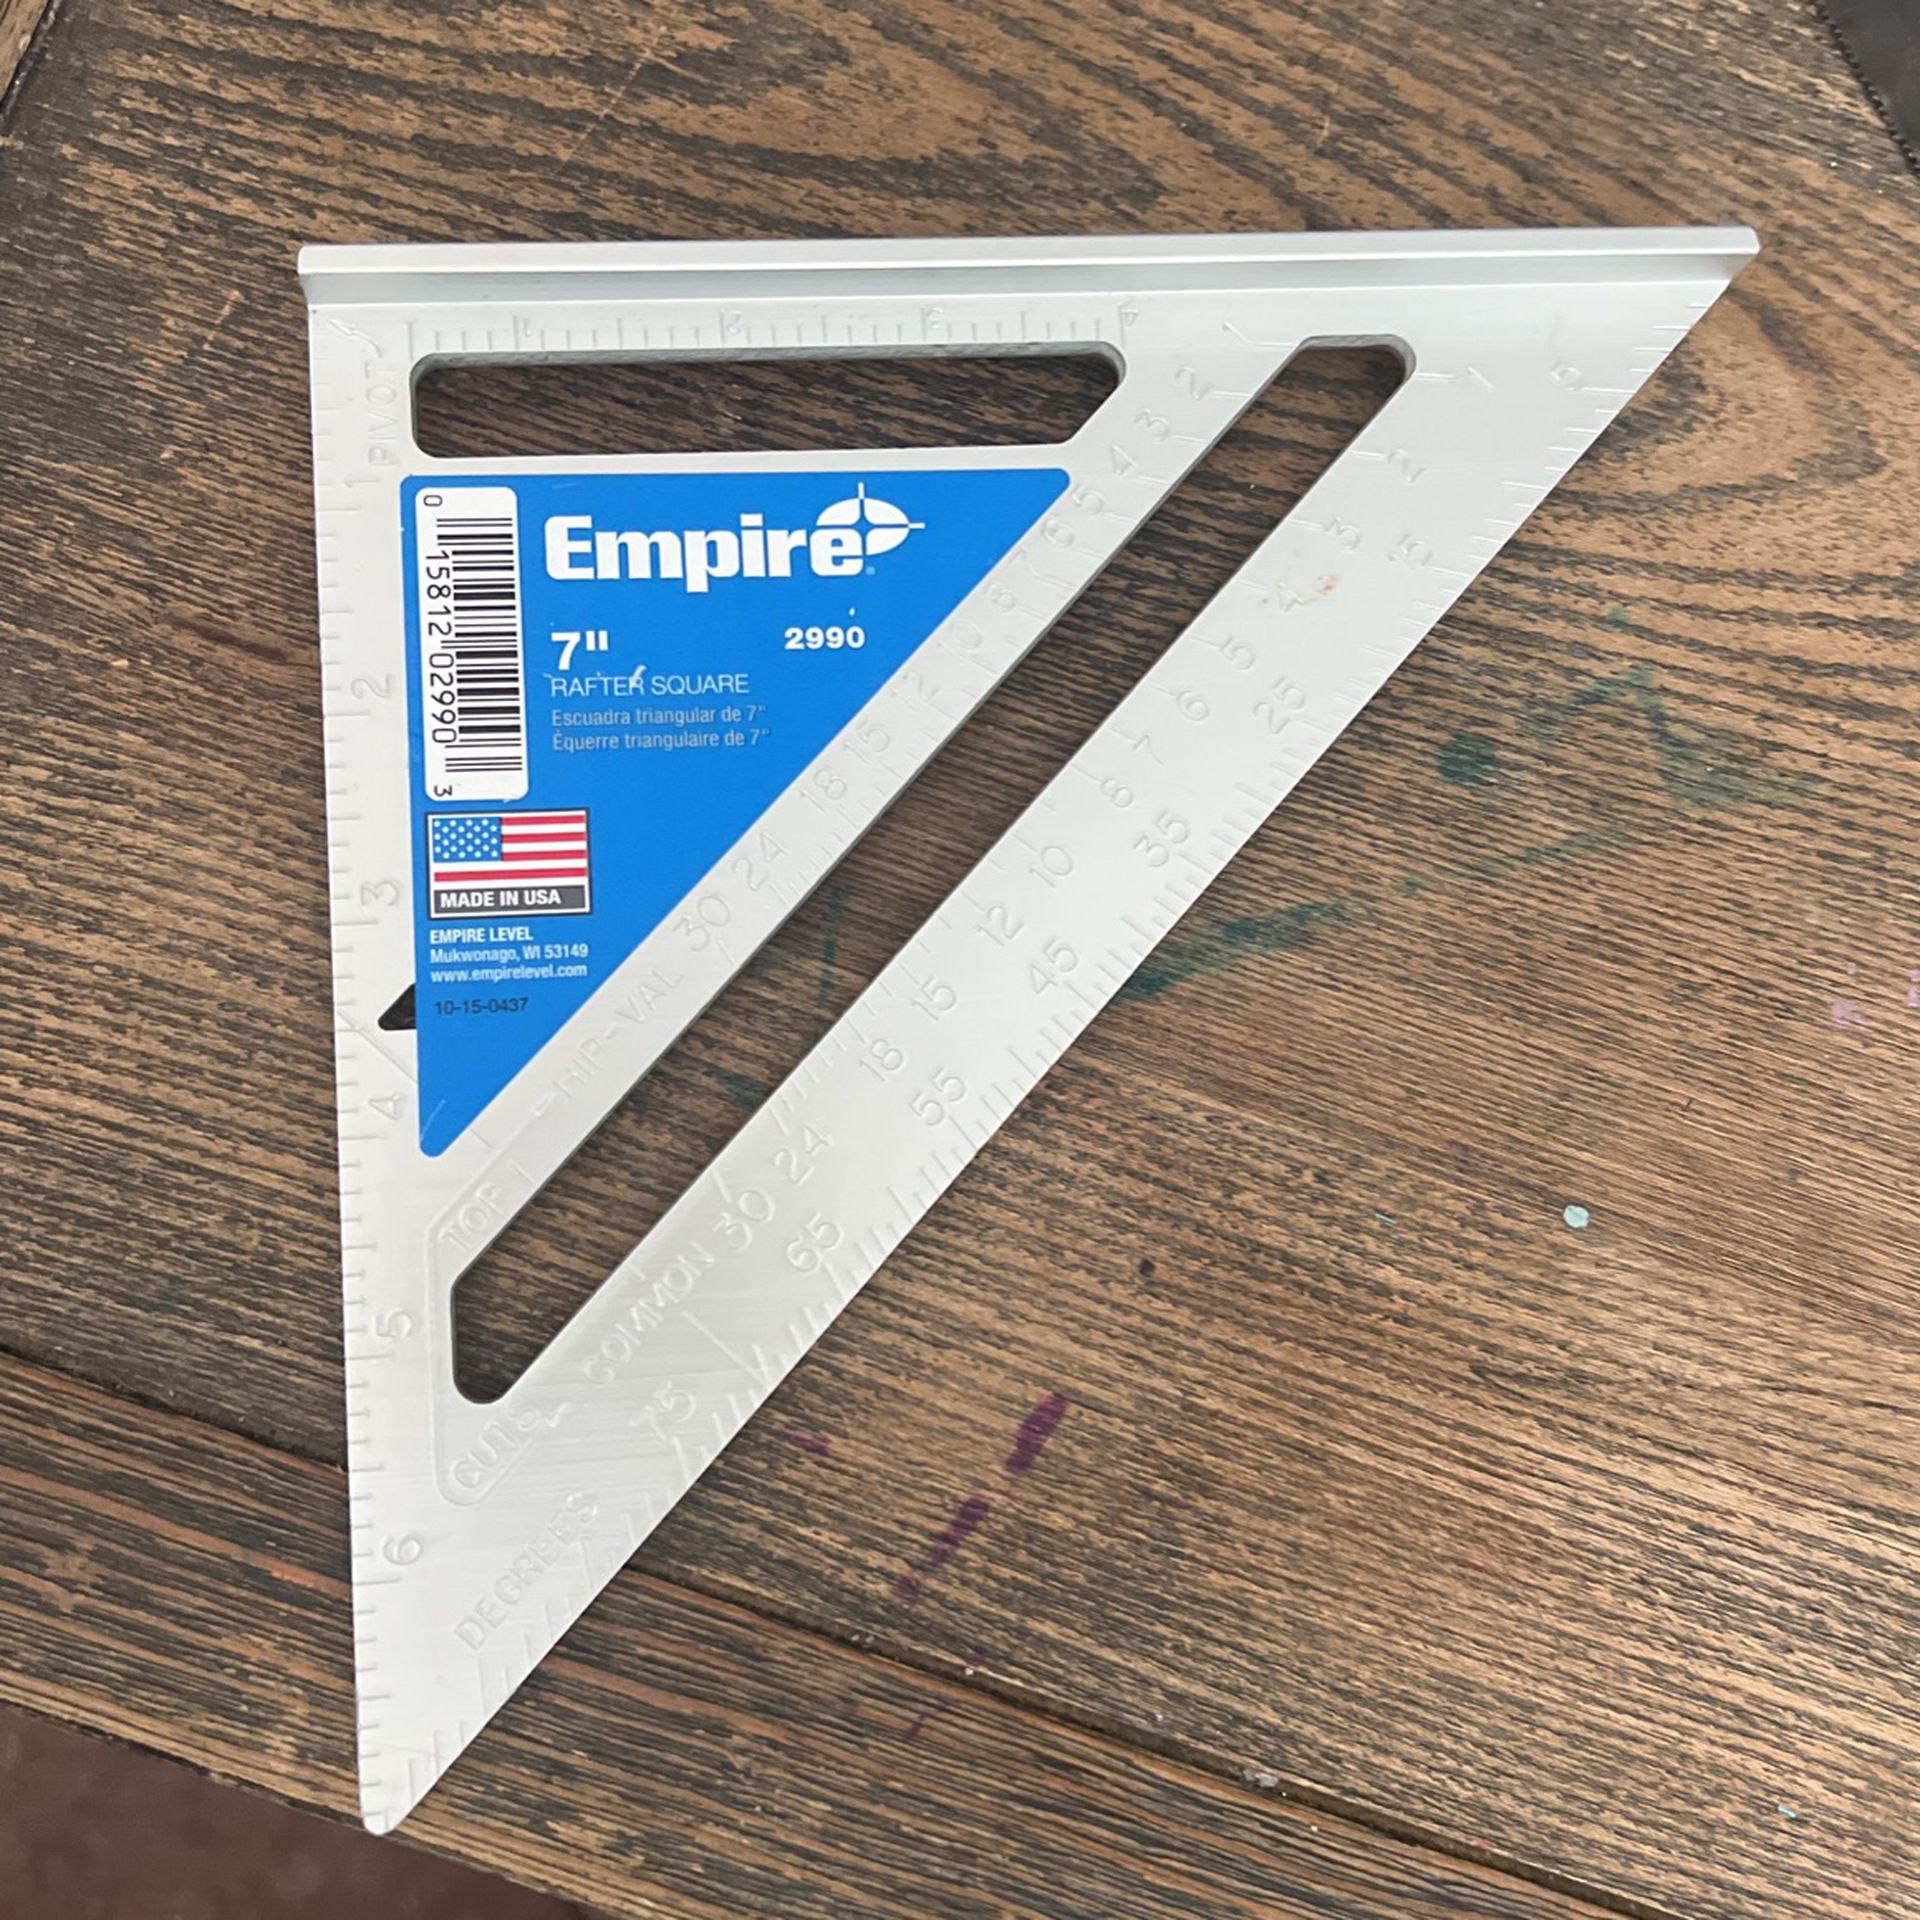 New Empire 7”rafter Square / Escuadra $ 10 Each I Have 2 